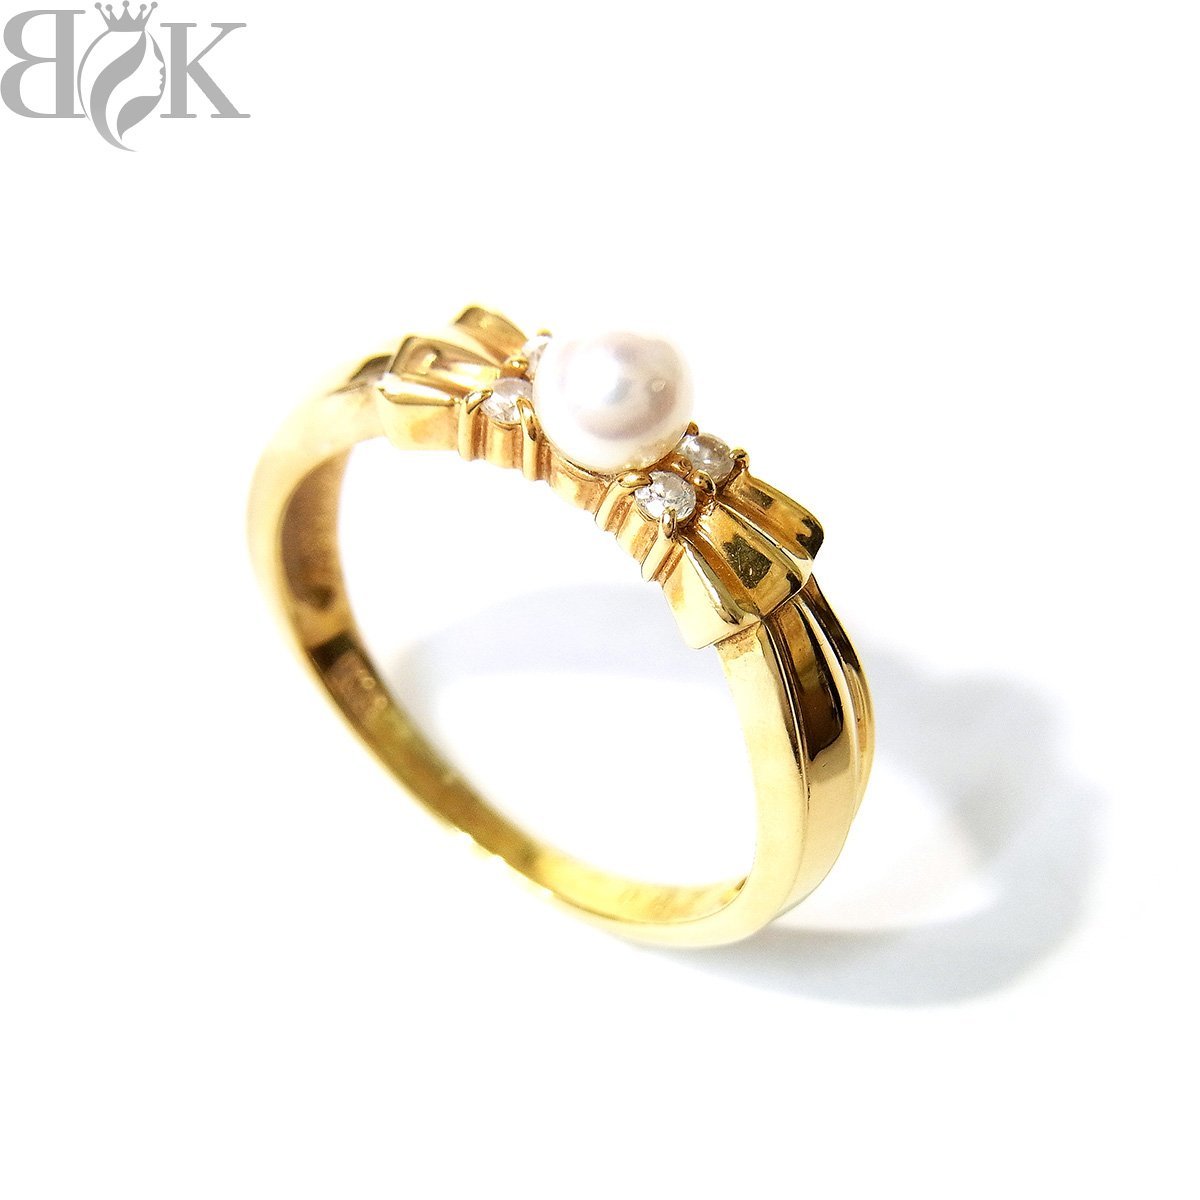 美品 K18 デザインリング 指輪 ダイヤ パール リボンモチーフ イエローゴールド 約10号 パール径約3.8mm 0.07ct 総重量約2.7g 〓